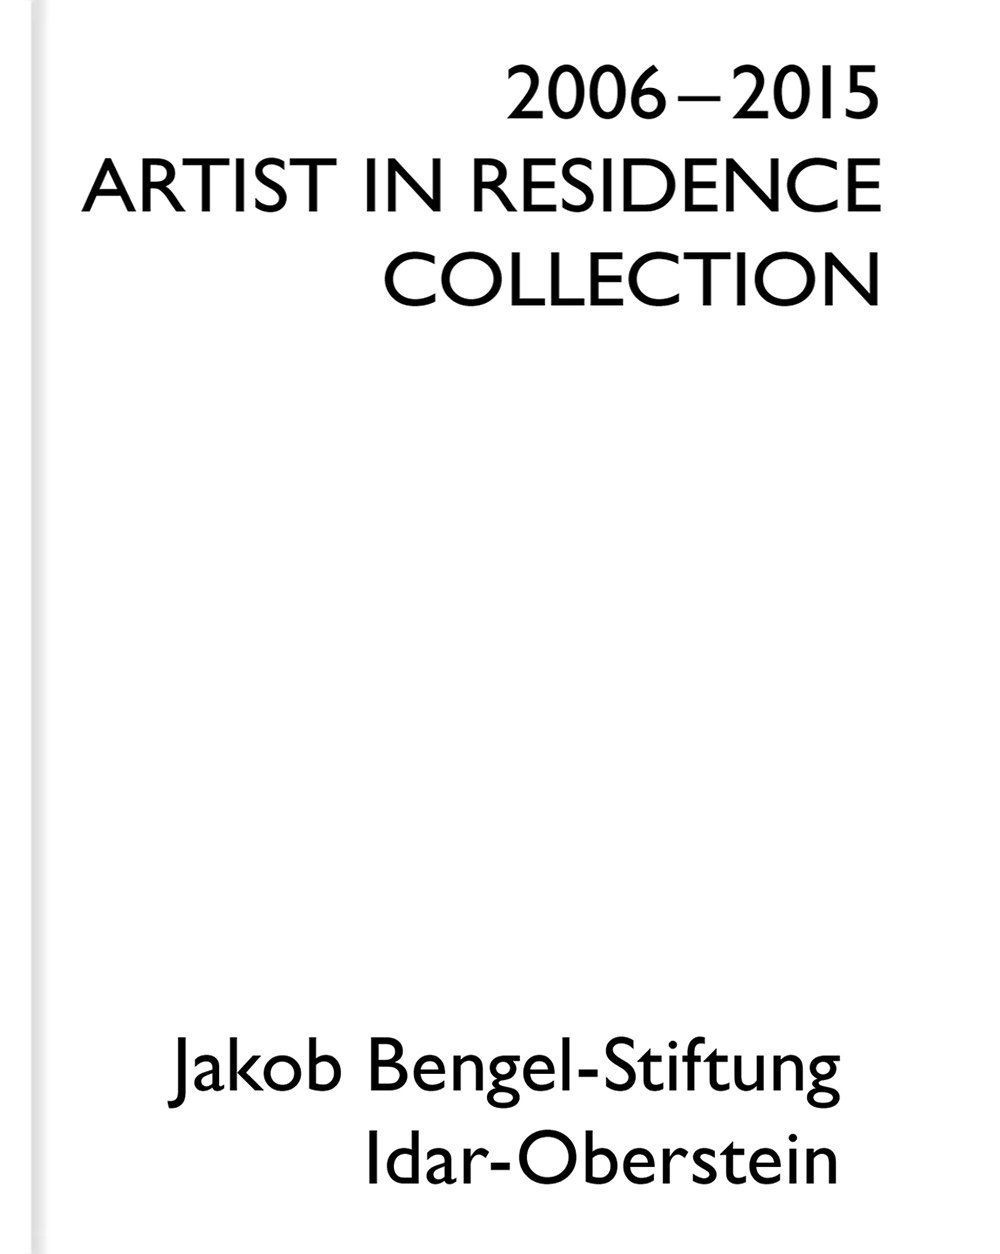 Artist in Residence 2006 - 2015